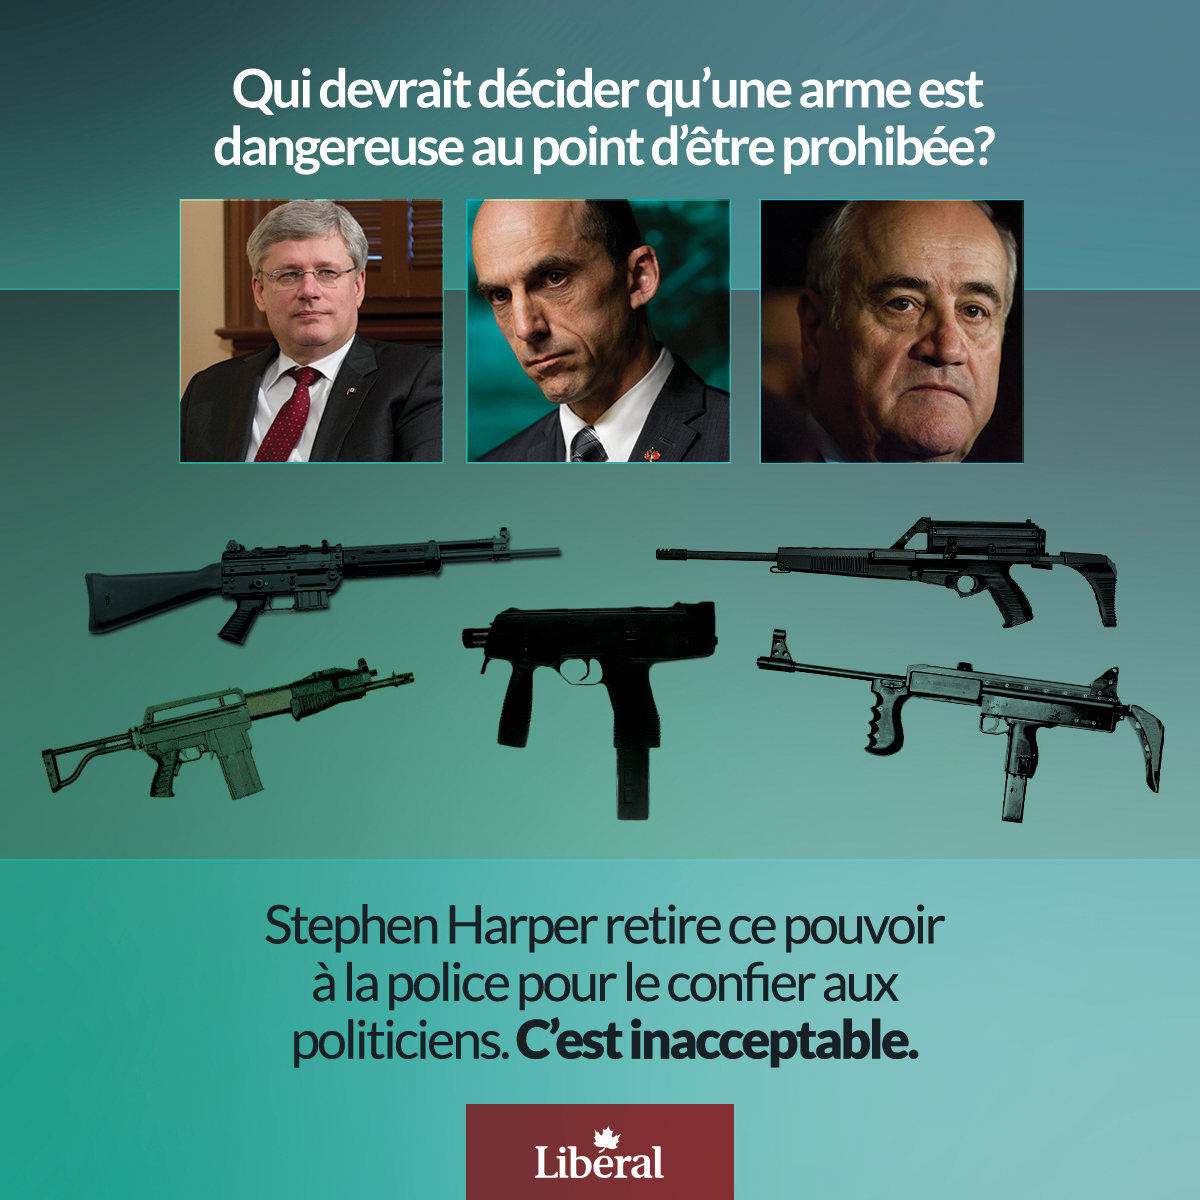 Qui devrait décider qu’une arme est dangereuse au point d’être prohibée?  Stephen Harper retire ce pouvoir à la police pour le confier aux politiciens. C’est inacceptable.